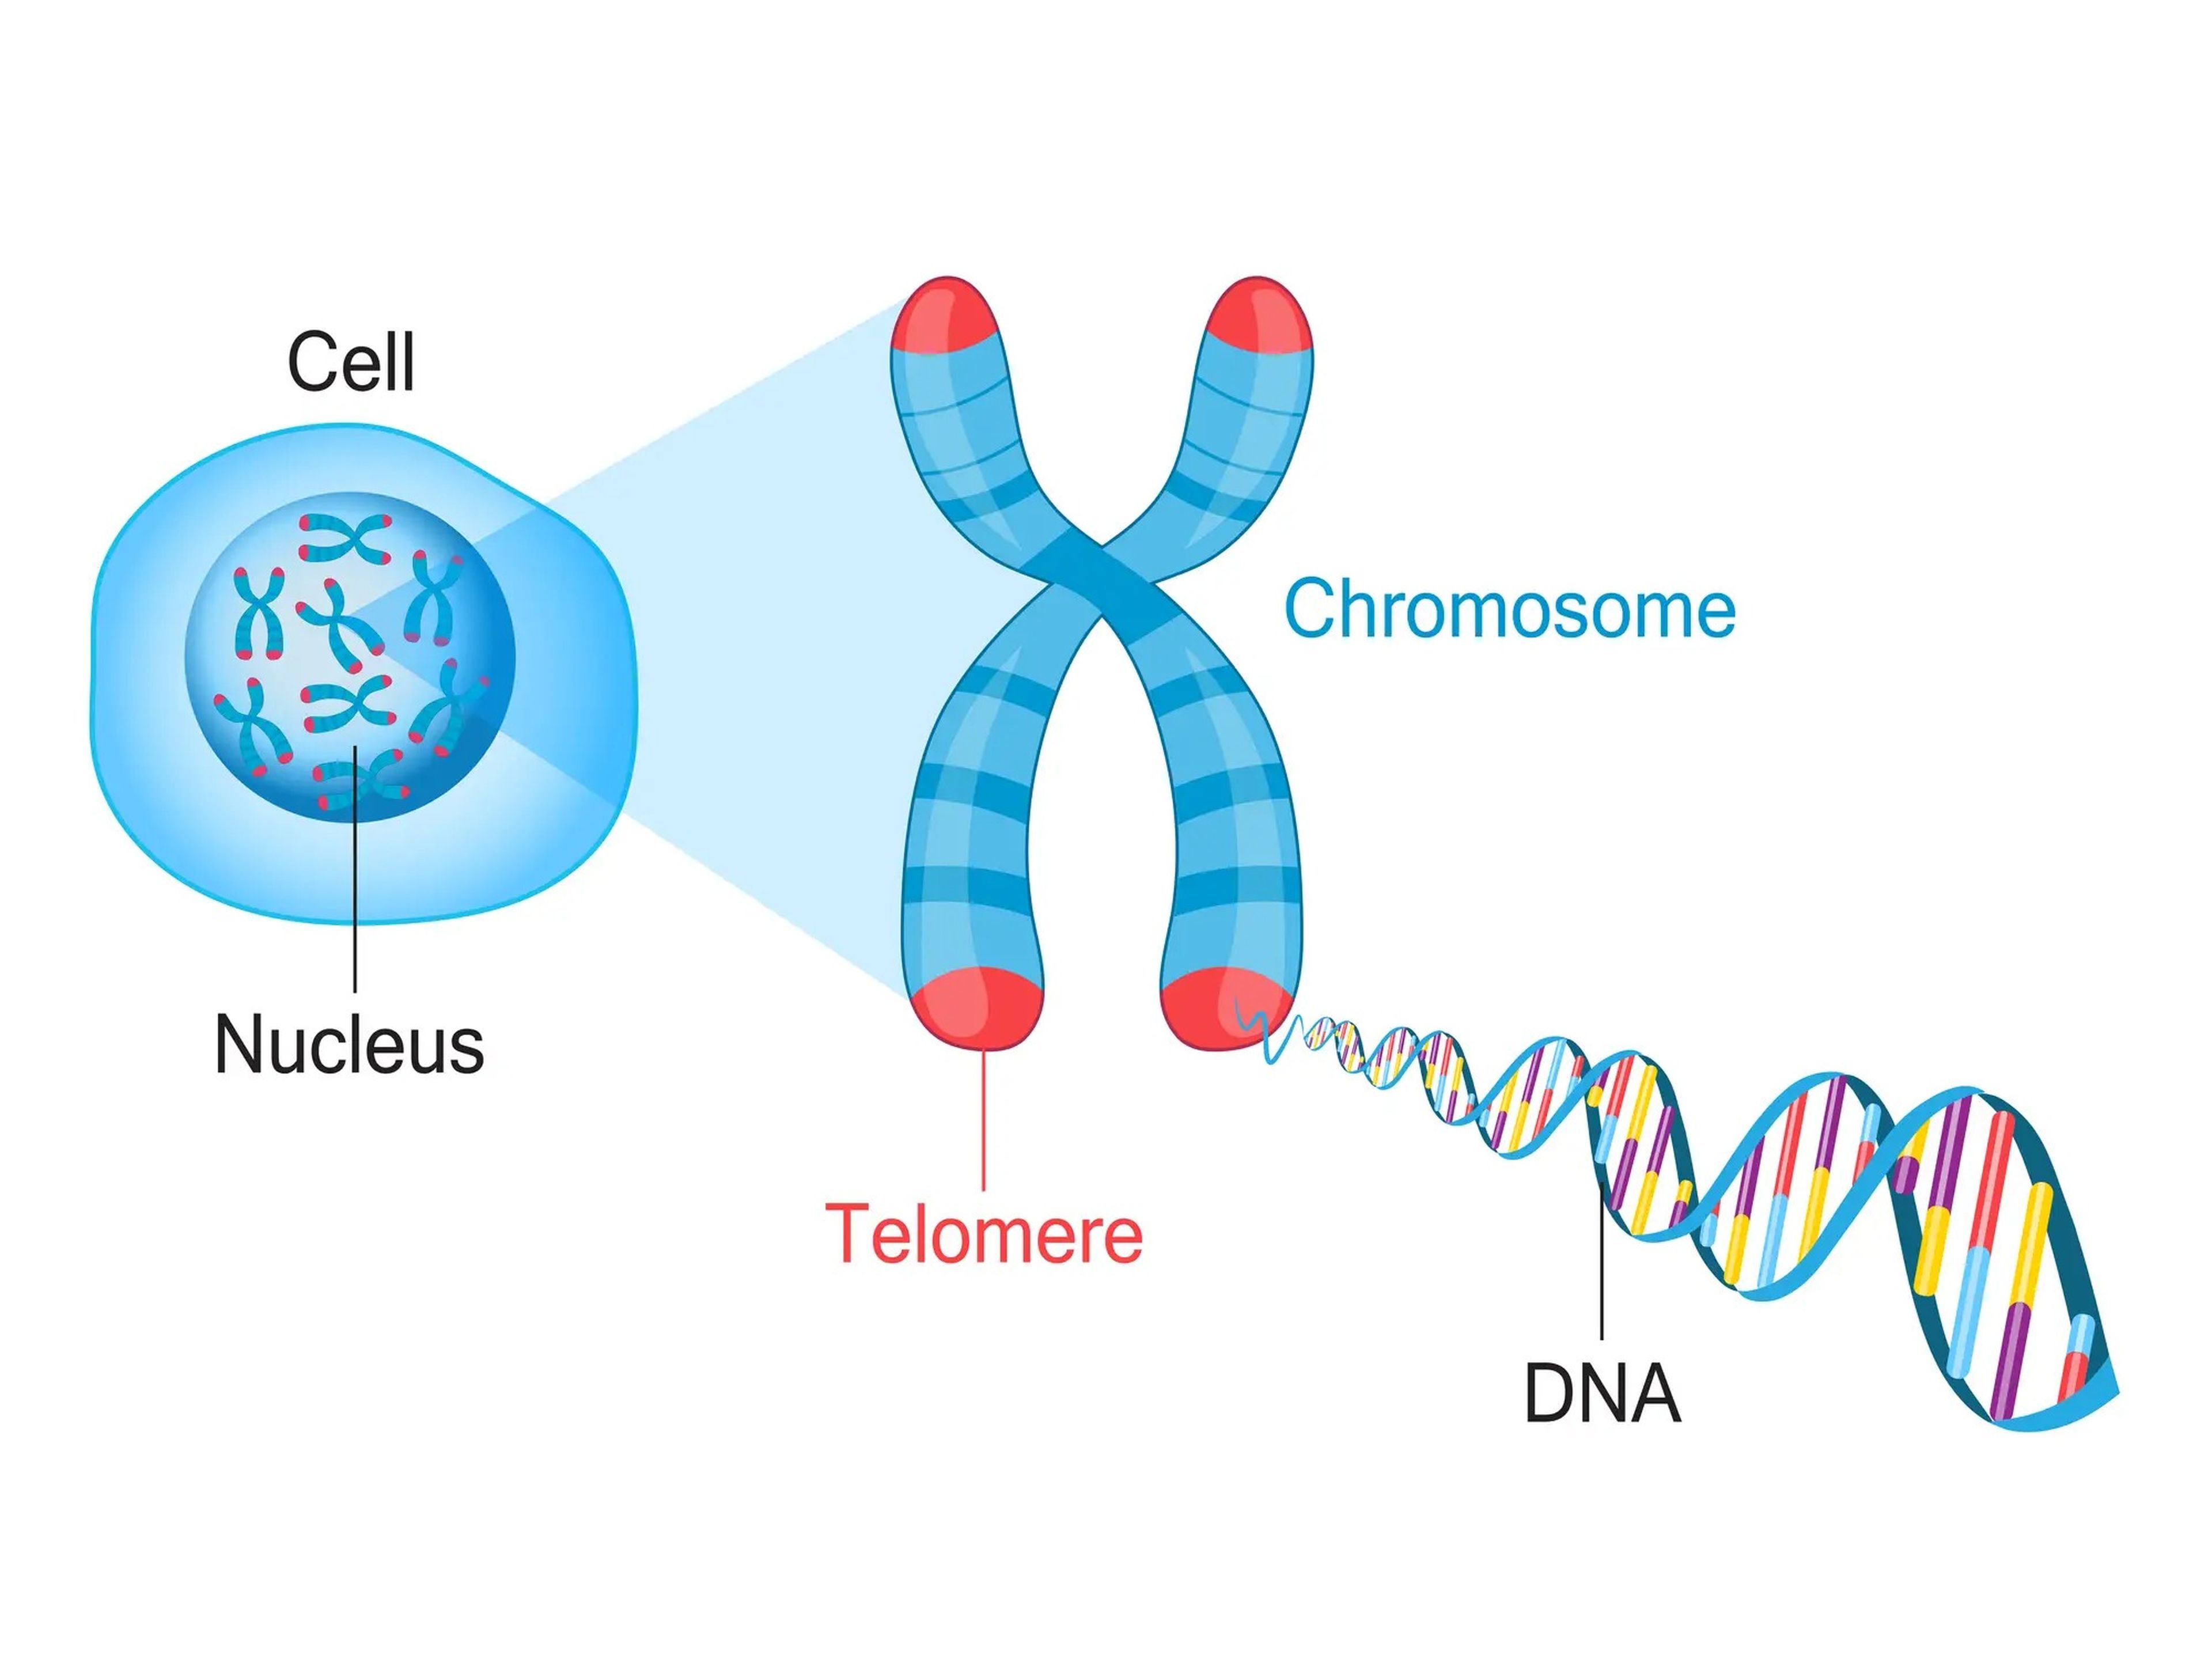 Los telómeros protegen el ADN de los daños que pueden provocar los efectos del envejecimiento. Pero con el tiempo, pierden su capacidad protectora.